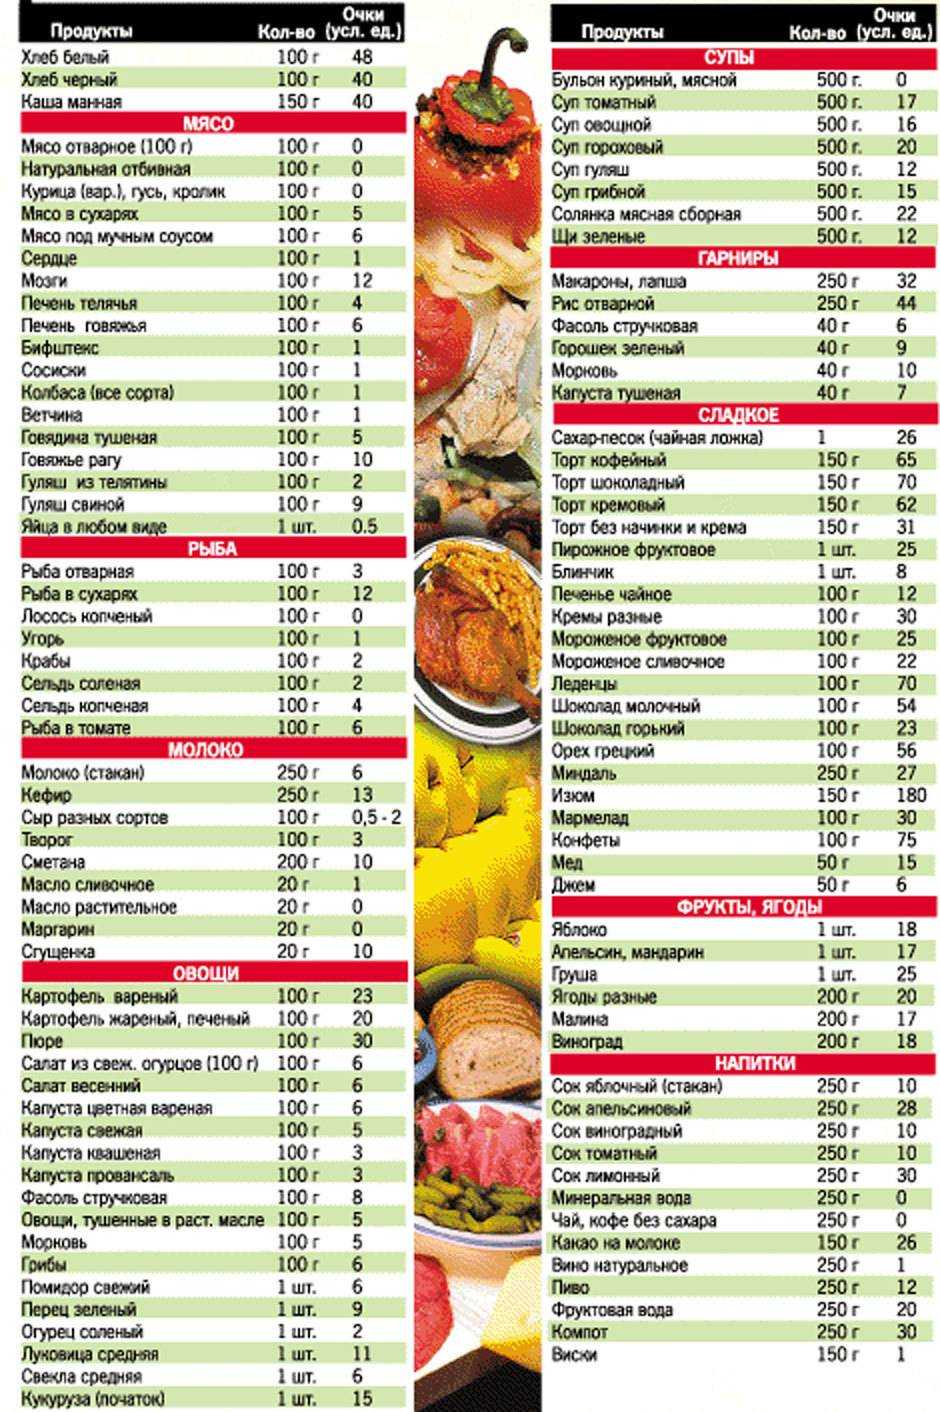 Низкоуглеводная диета для похудения: меню на неделю, рецепты, список продуктов